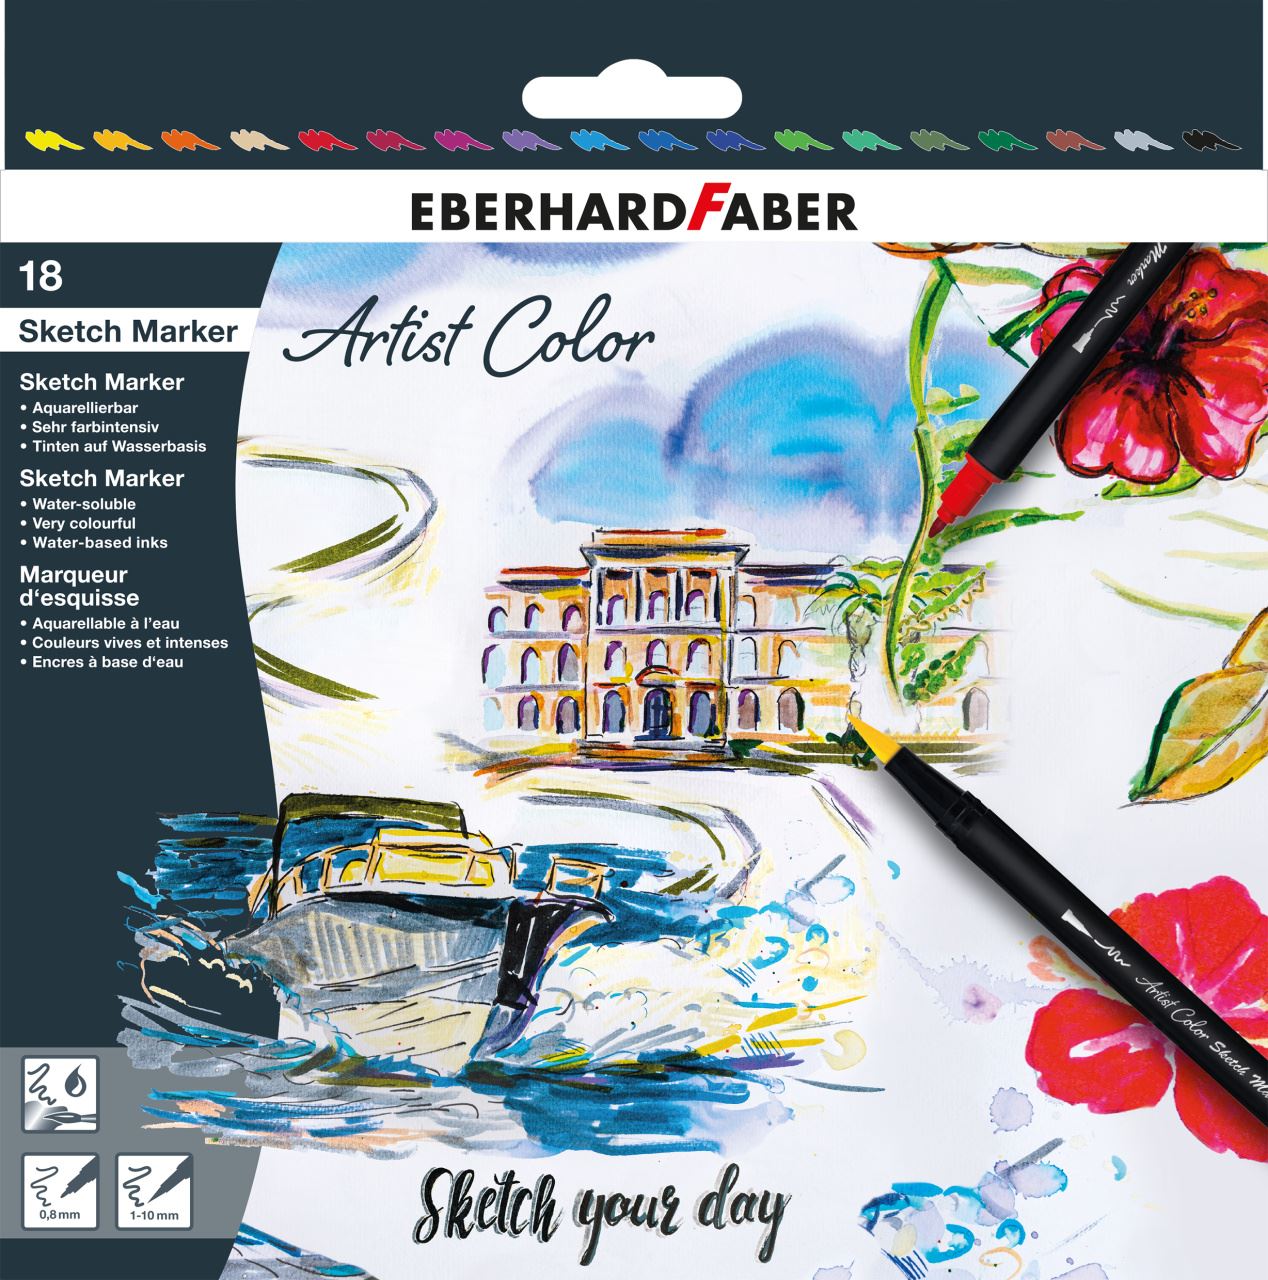 Eberhard-Faber - Sketch Marker Artist Color 18 pcs